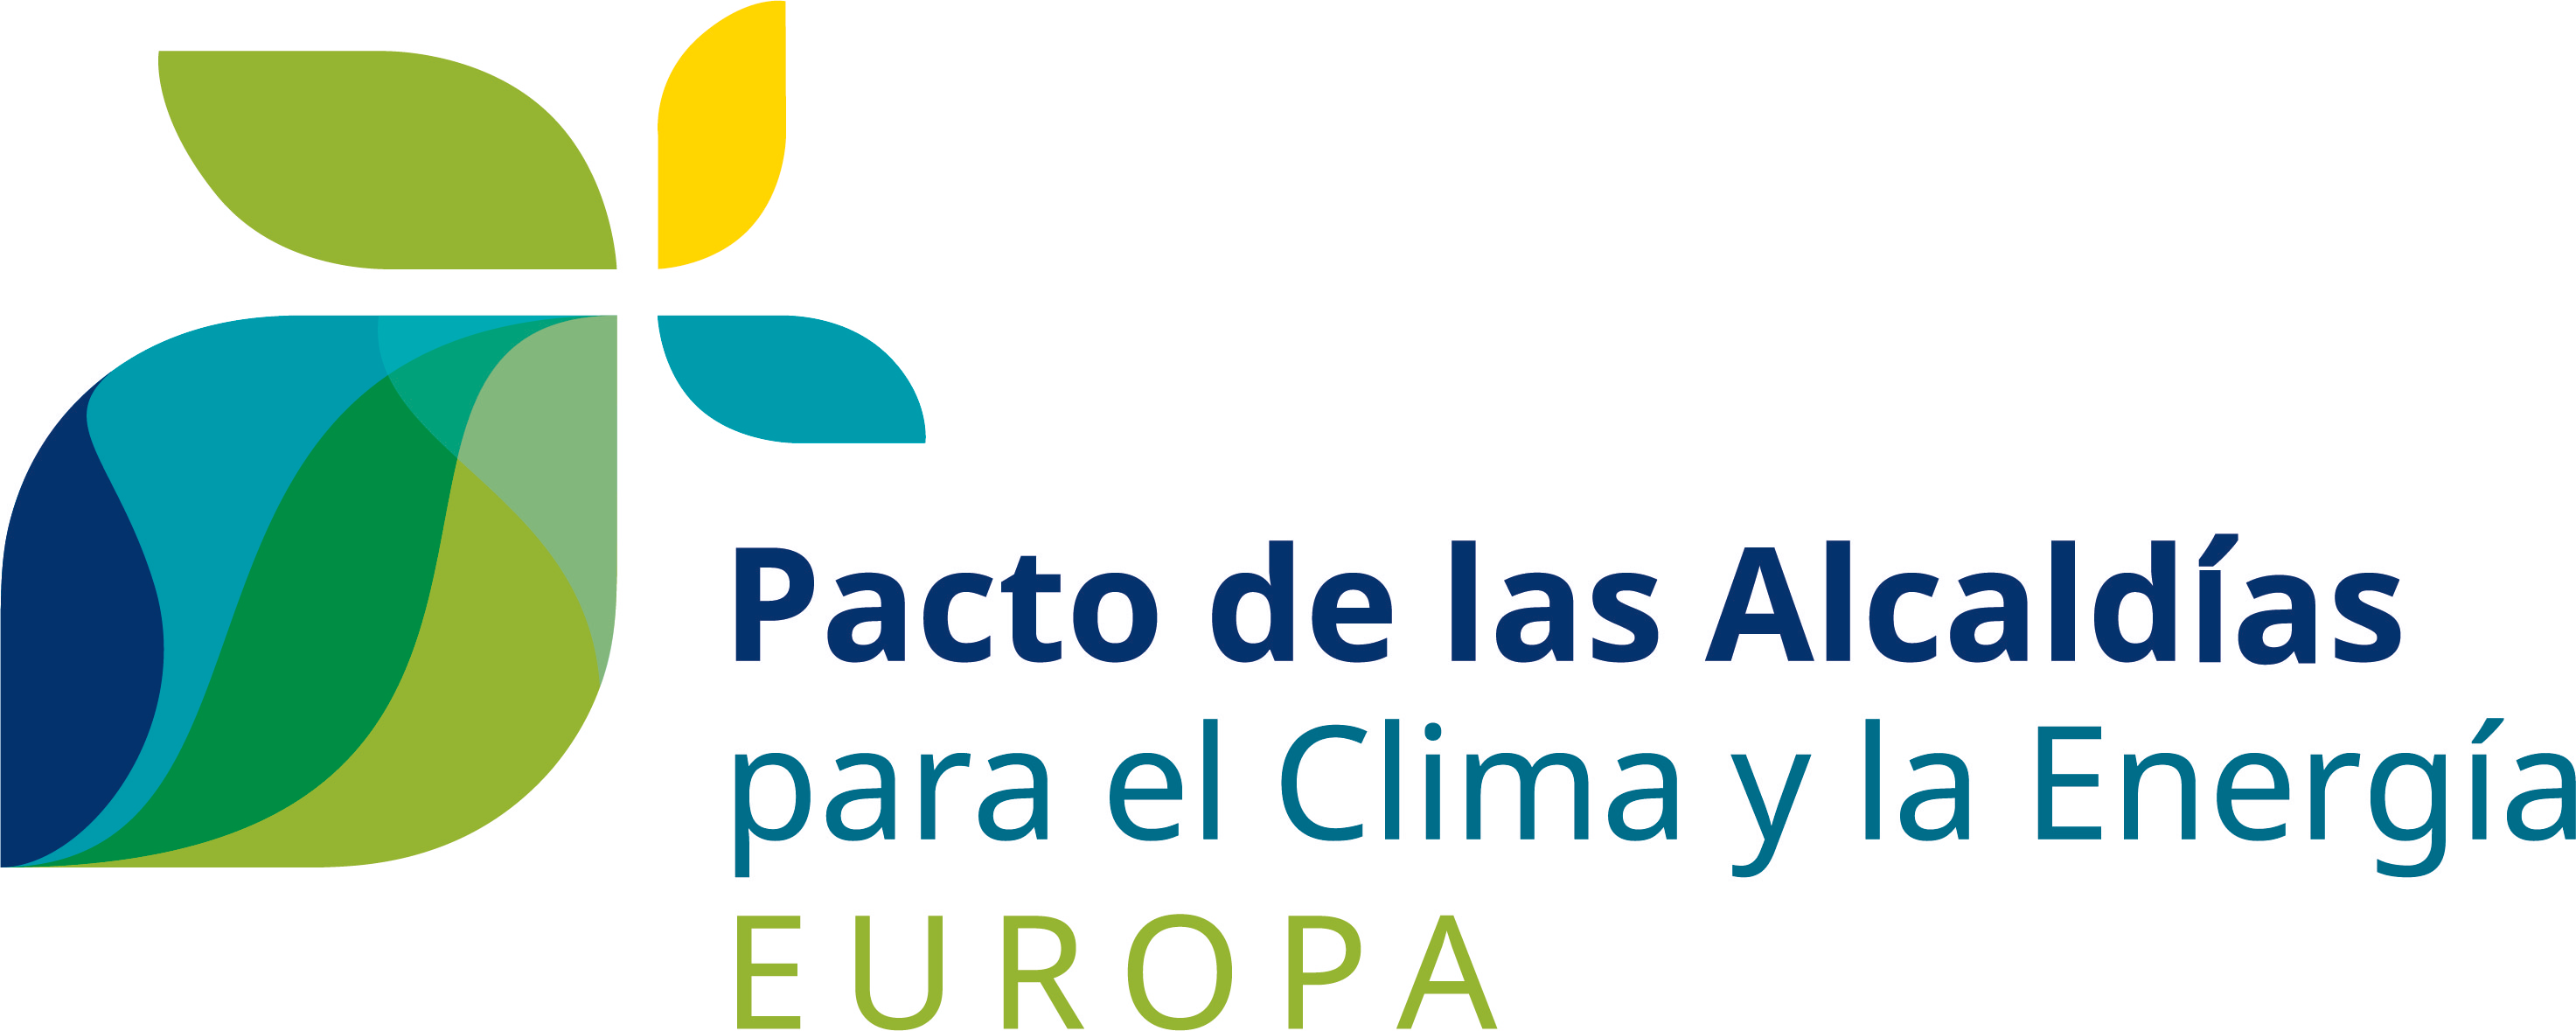 Pacto de los Alcaldes para el Clima y la Energía Inicio